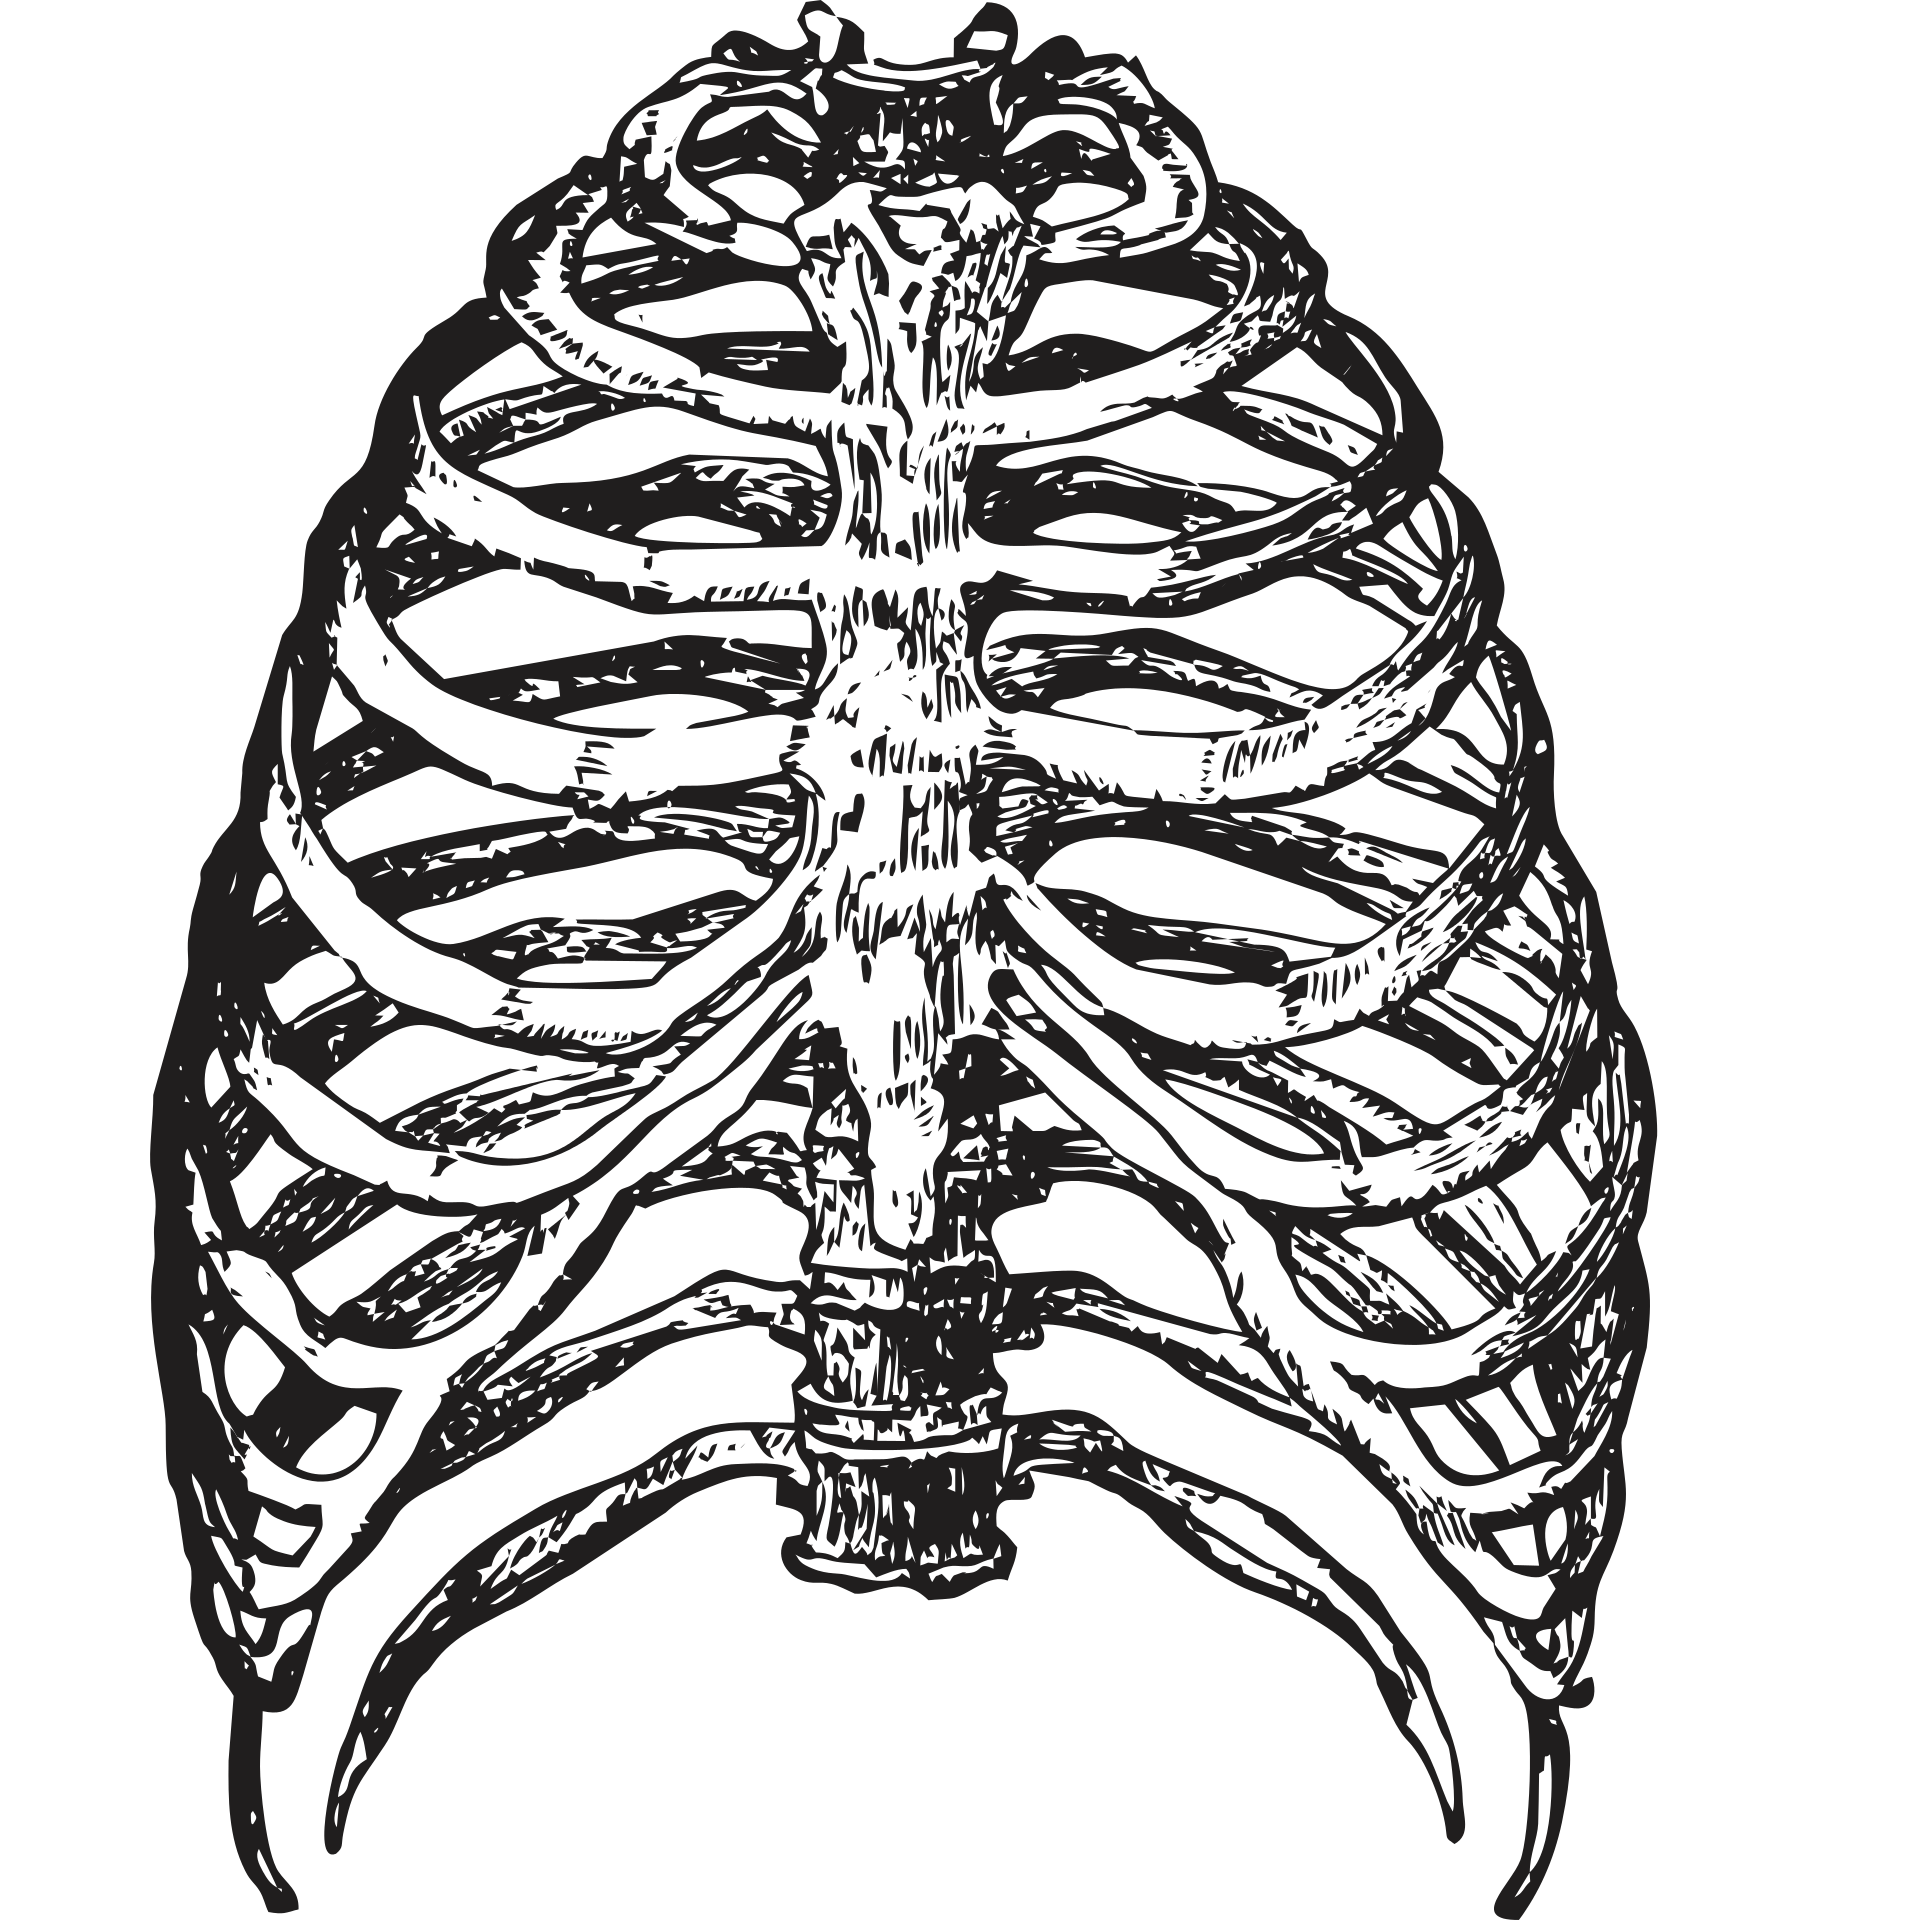 Округлая грудная клетка. Грудная клетка с ребрами и грудиной. Кости рёбер с грудиной. Скелет грудной клетки ребра. Скелет человека грудная клетка ребра.